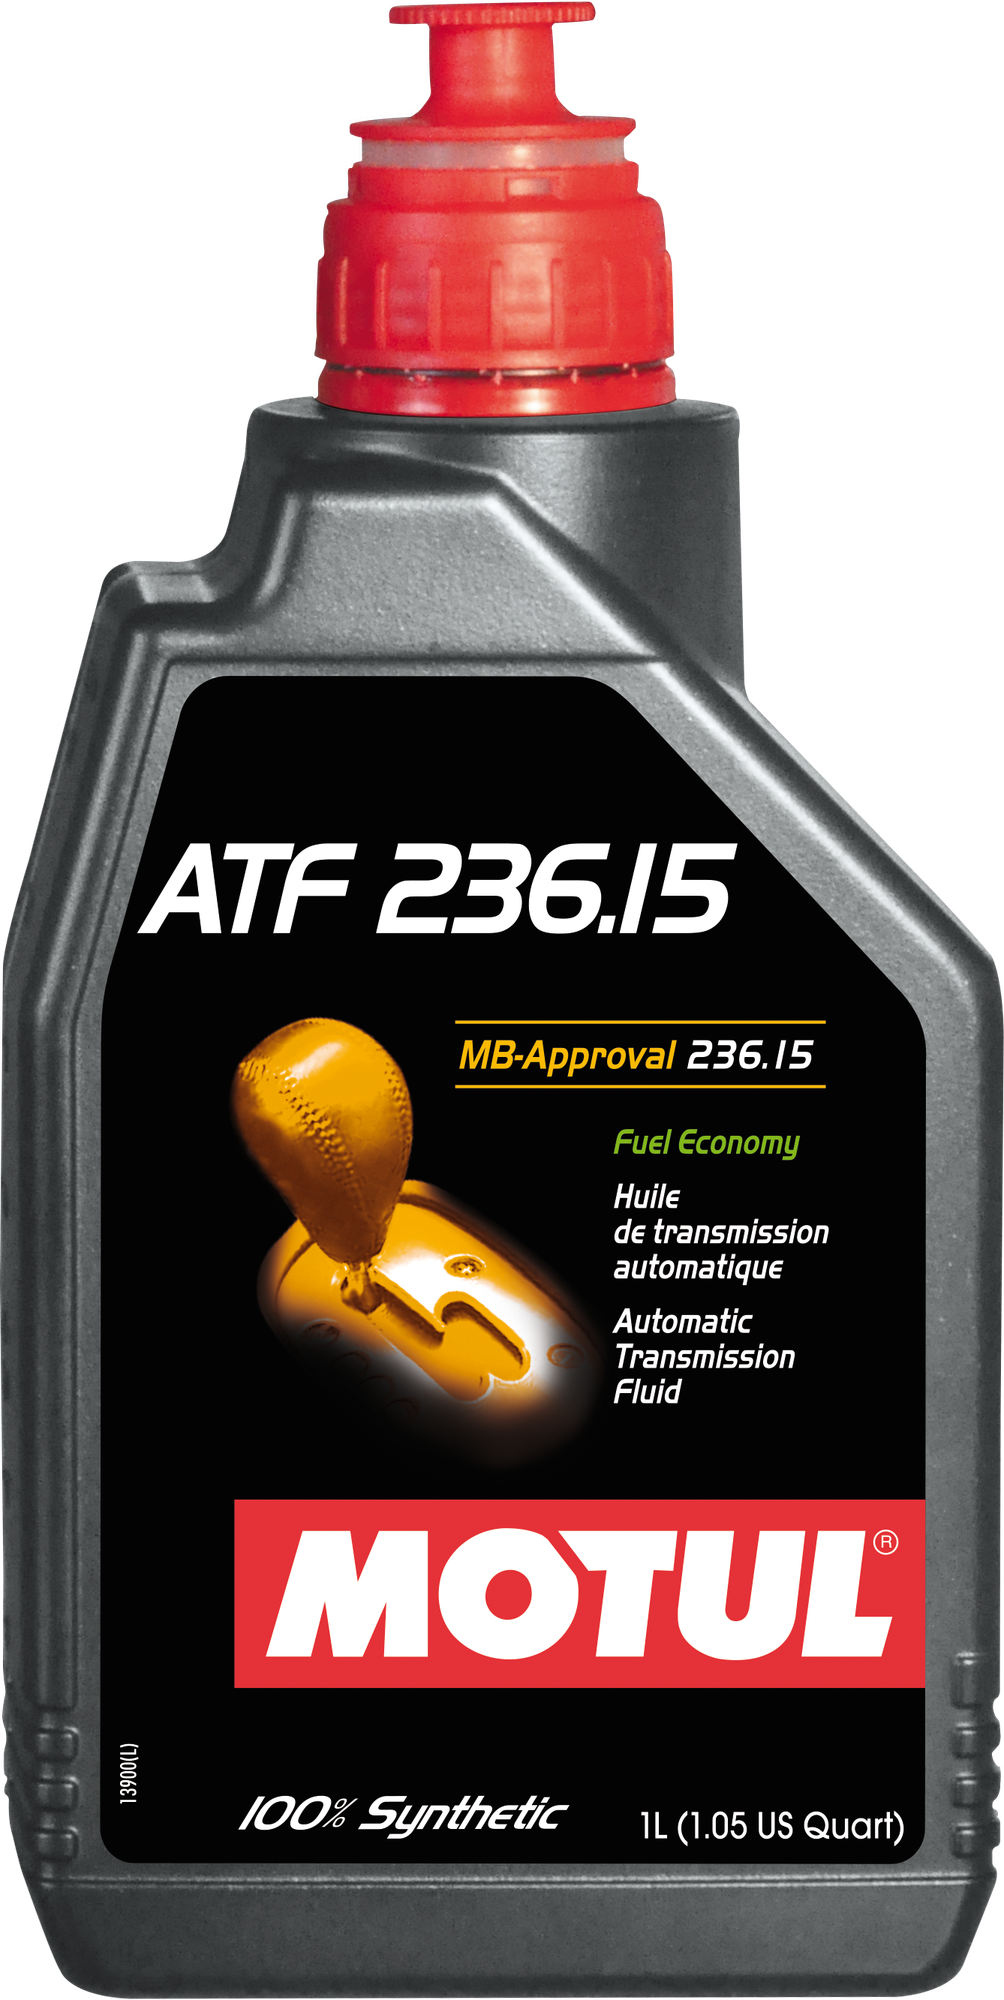 Трансмиссионное масло Motul Multi ATF 236.15 1L